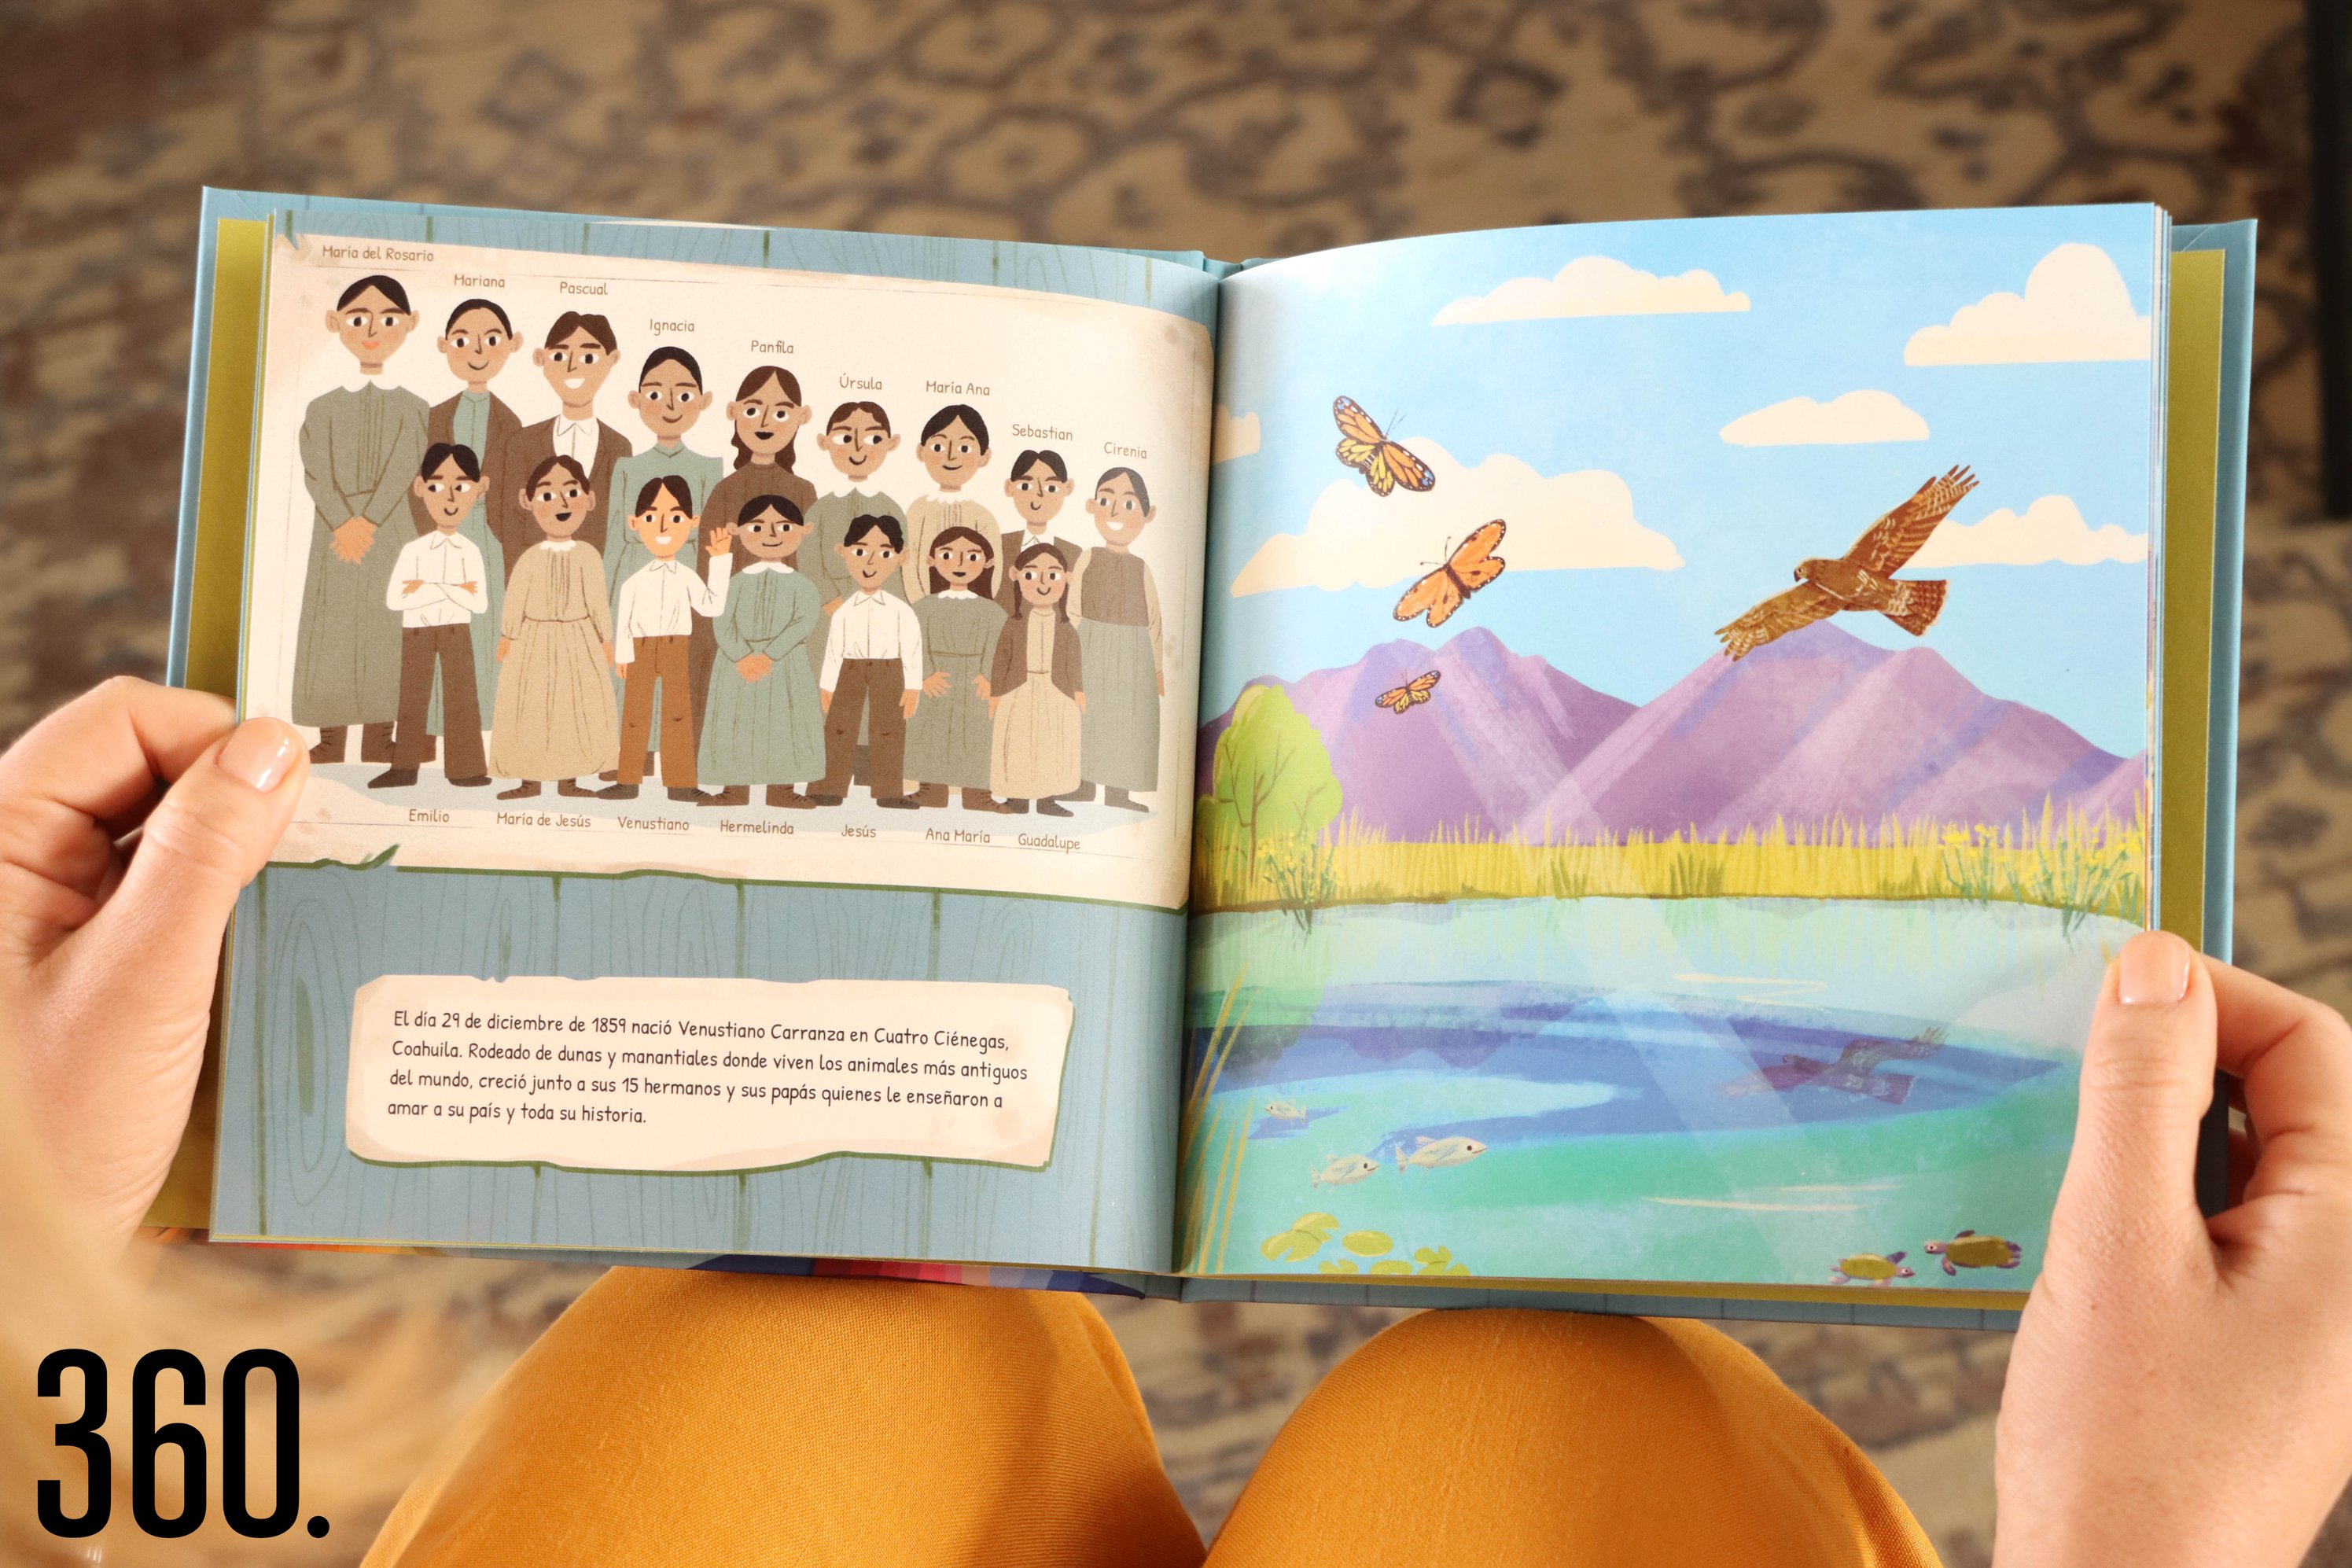 El libro cuenta con las ilustraciones de Daniela Rodríguez, la puedes encontrar en Instagram como @heyatomika